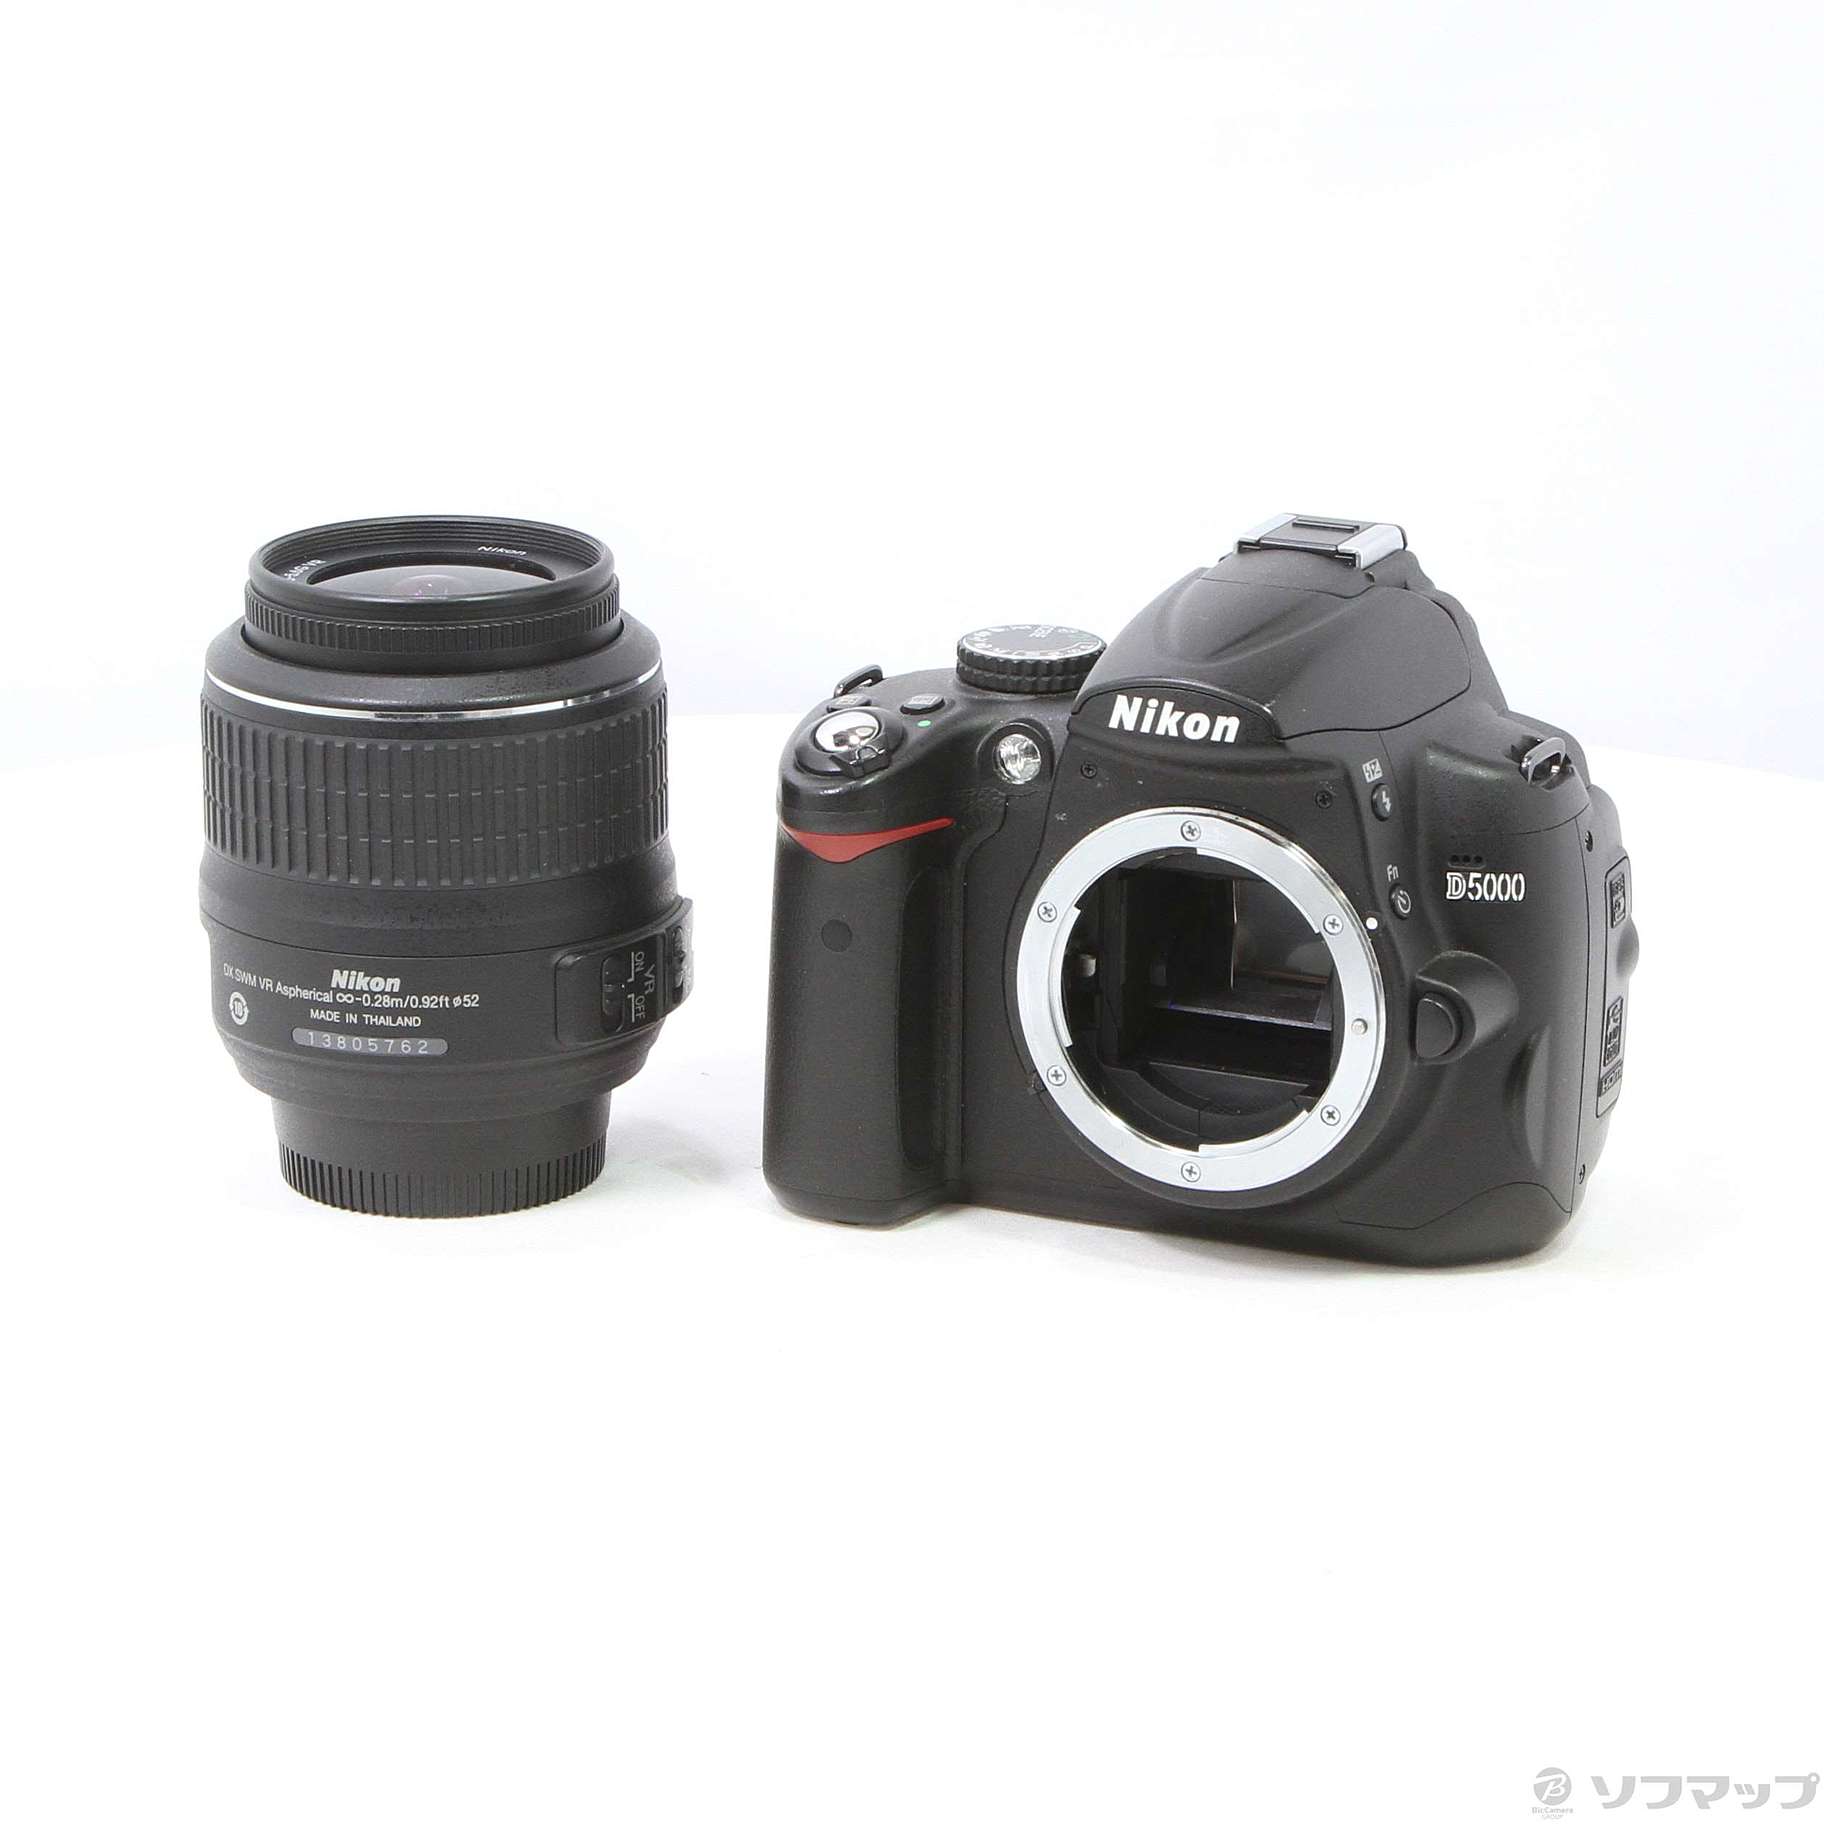 セール商品 Nikon D5000 ボディ【中古】 デジタルカメラ